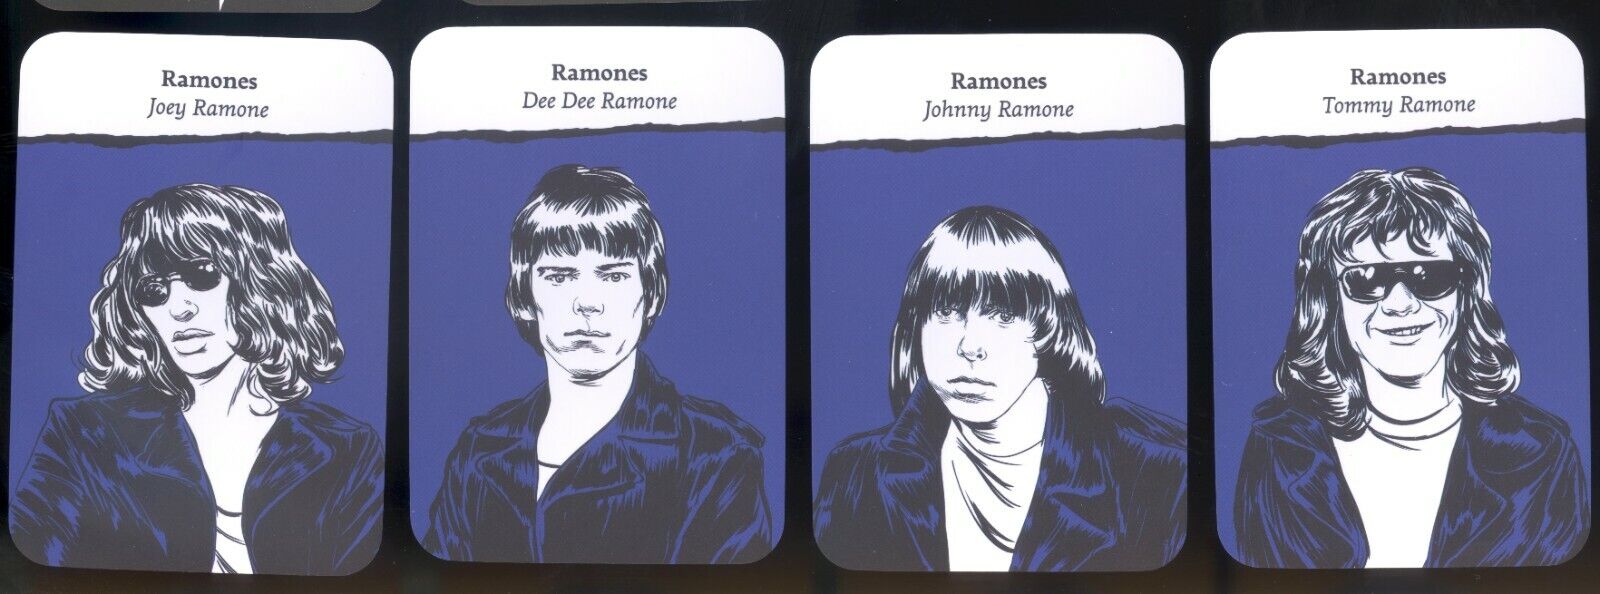 Ramones Complete Card Set of 4 Mint 2018 Johnny Dee Dee Tommy Joey Punk Rock